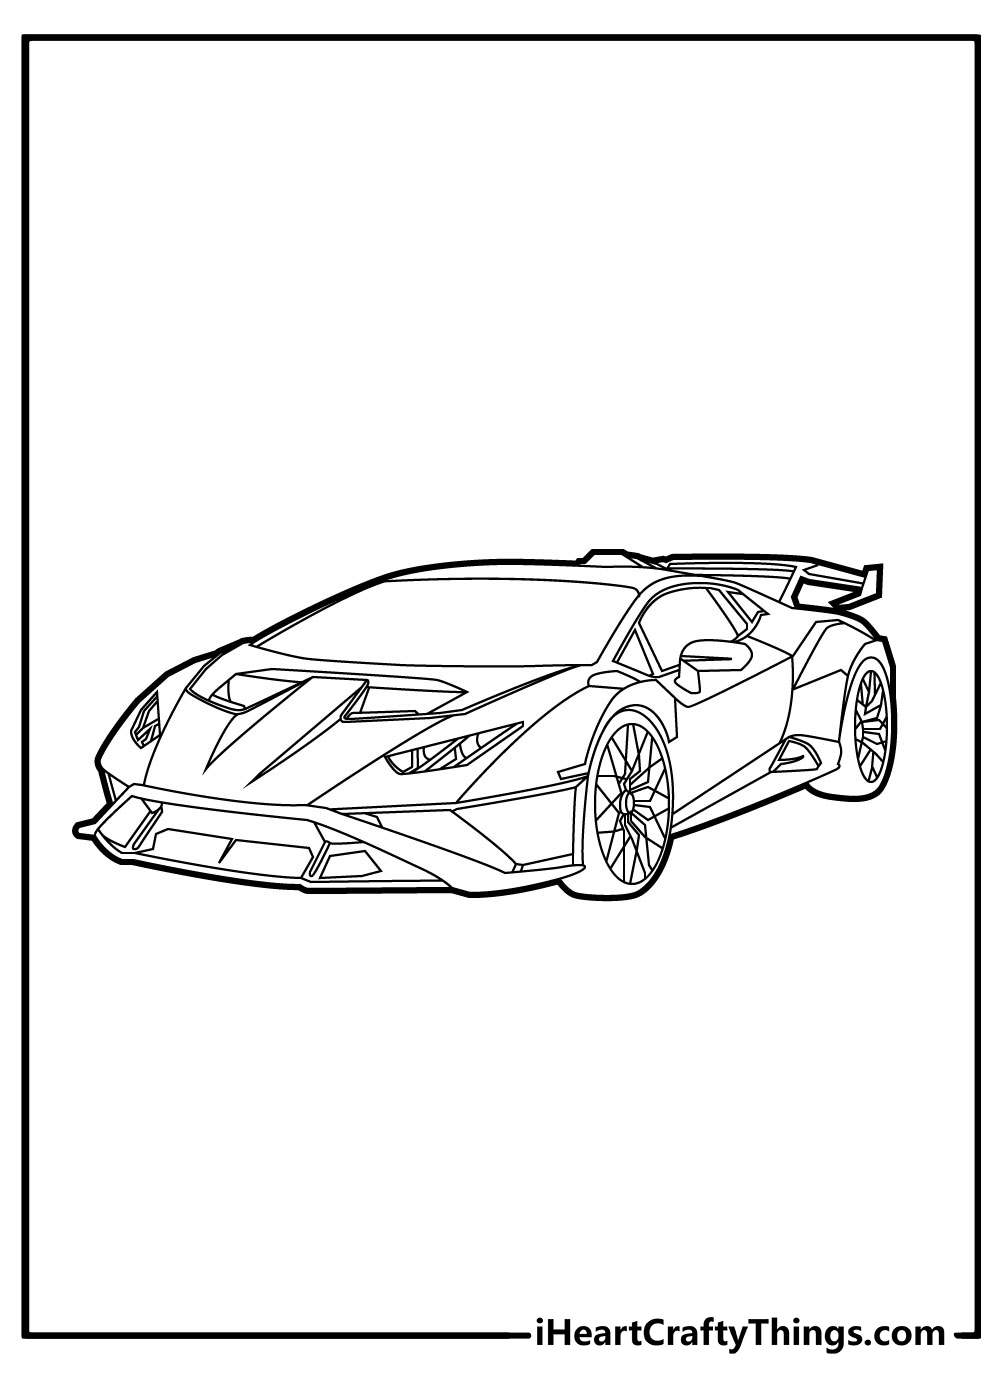 Lamborghini Coloring Original Sheet for children free download